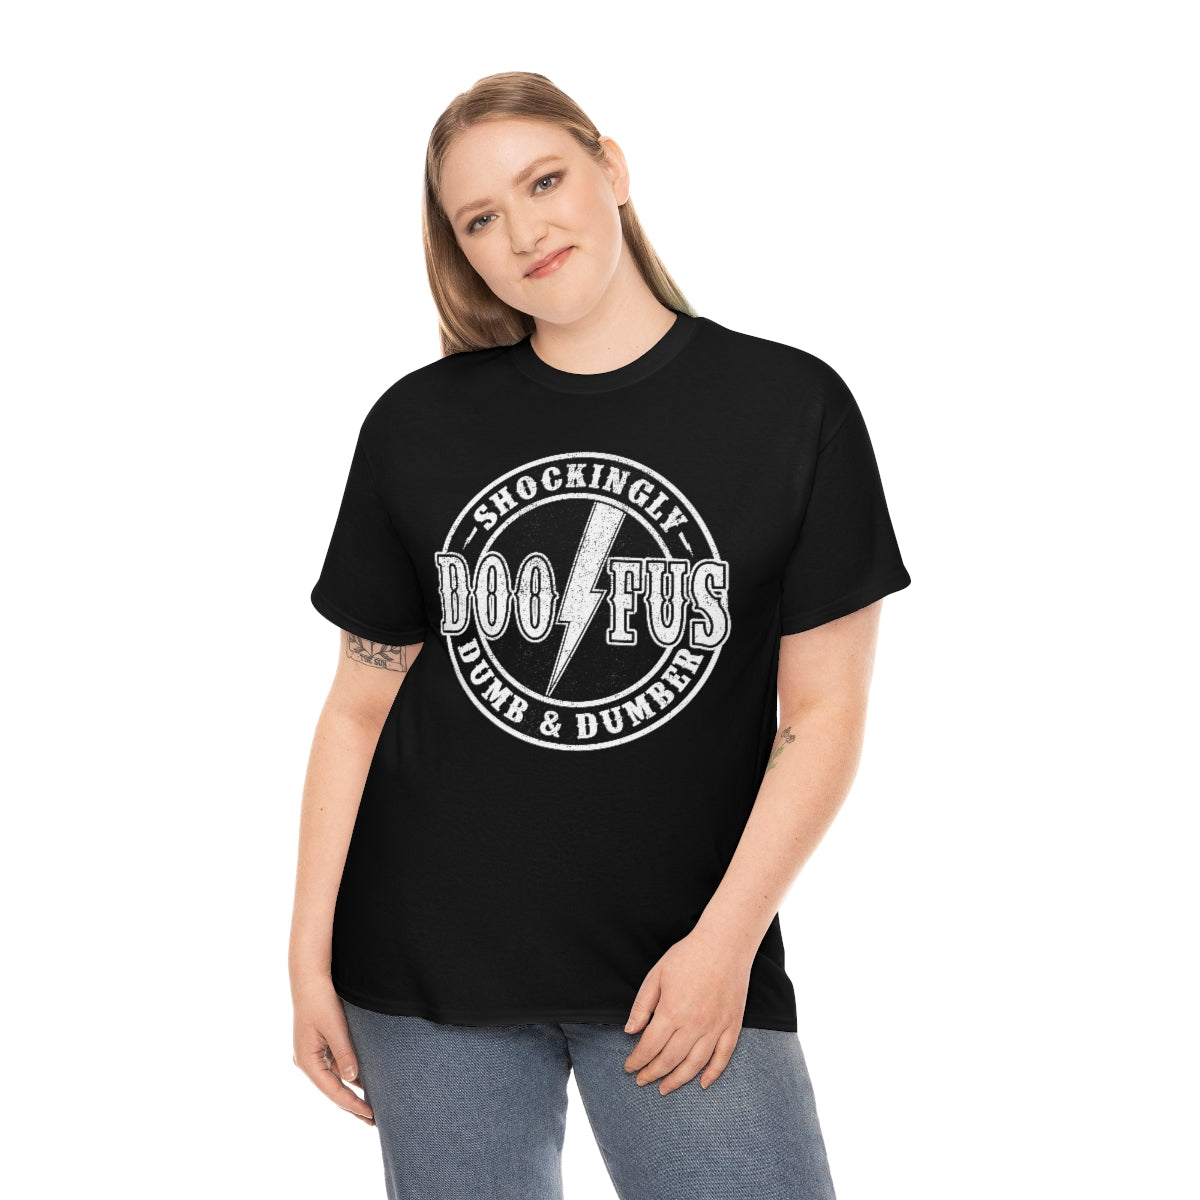 Doofus Rock & Roll T-Shirt Unisex Short Sleeve Funny Gag Gift